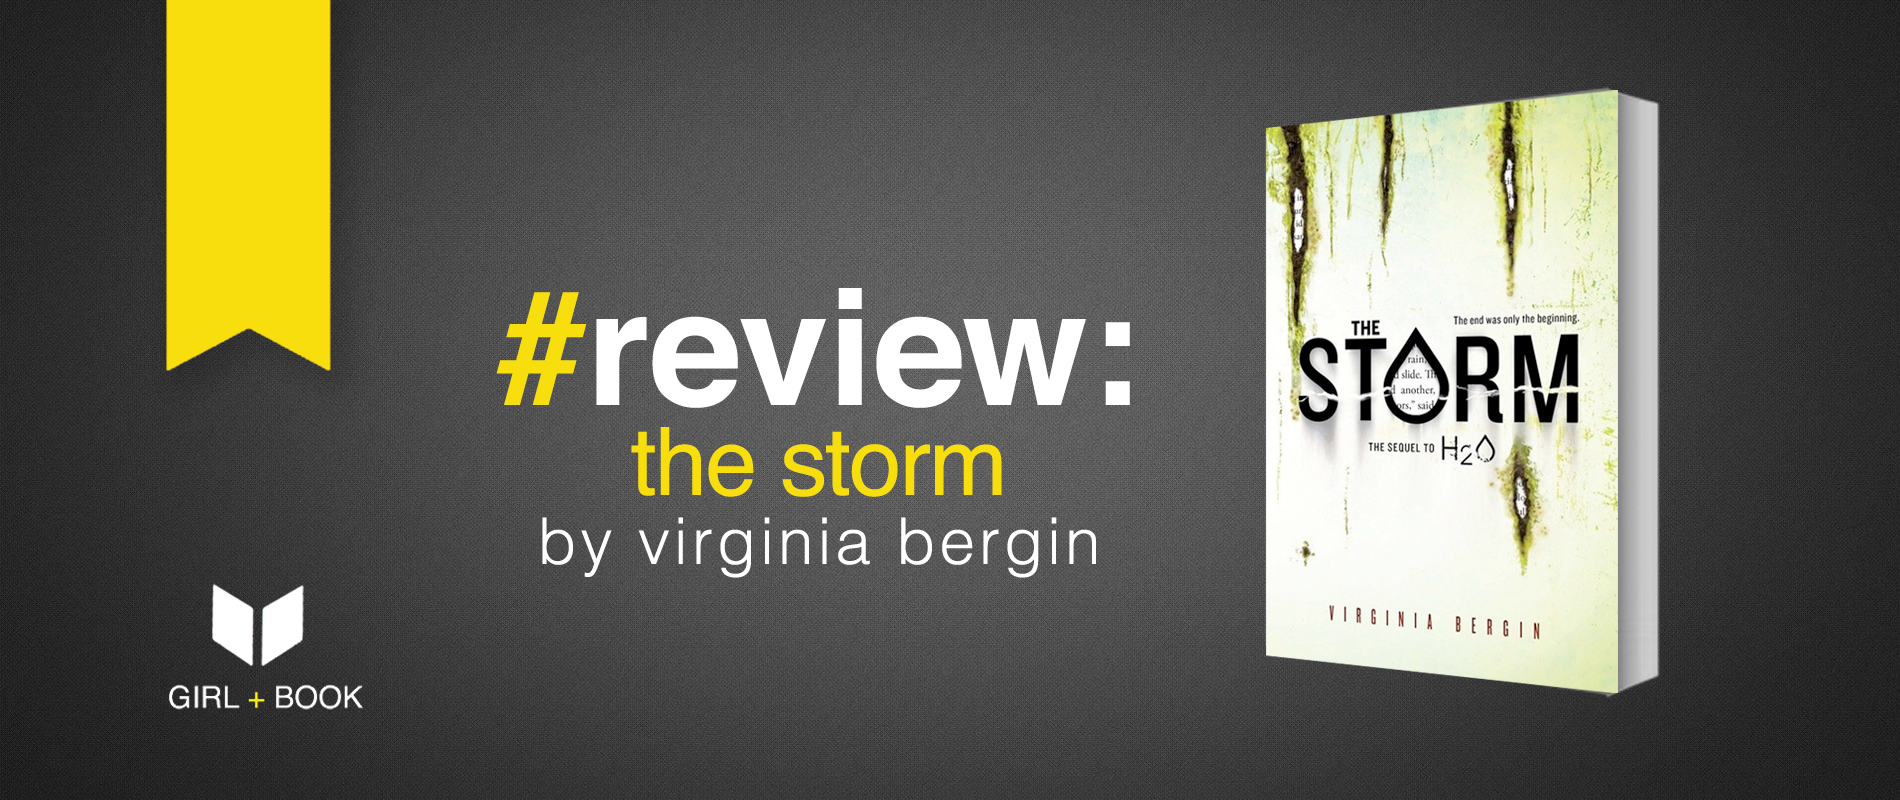 the-storm-virginia-bergin